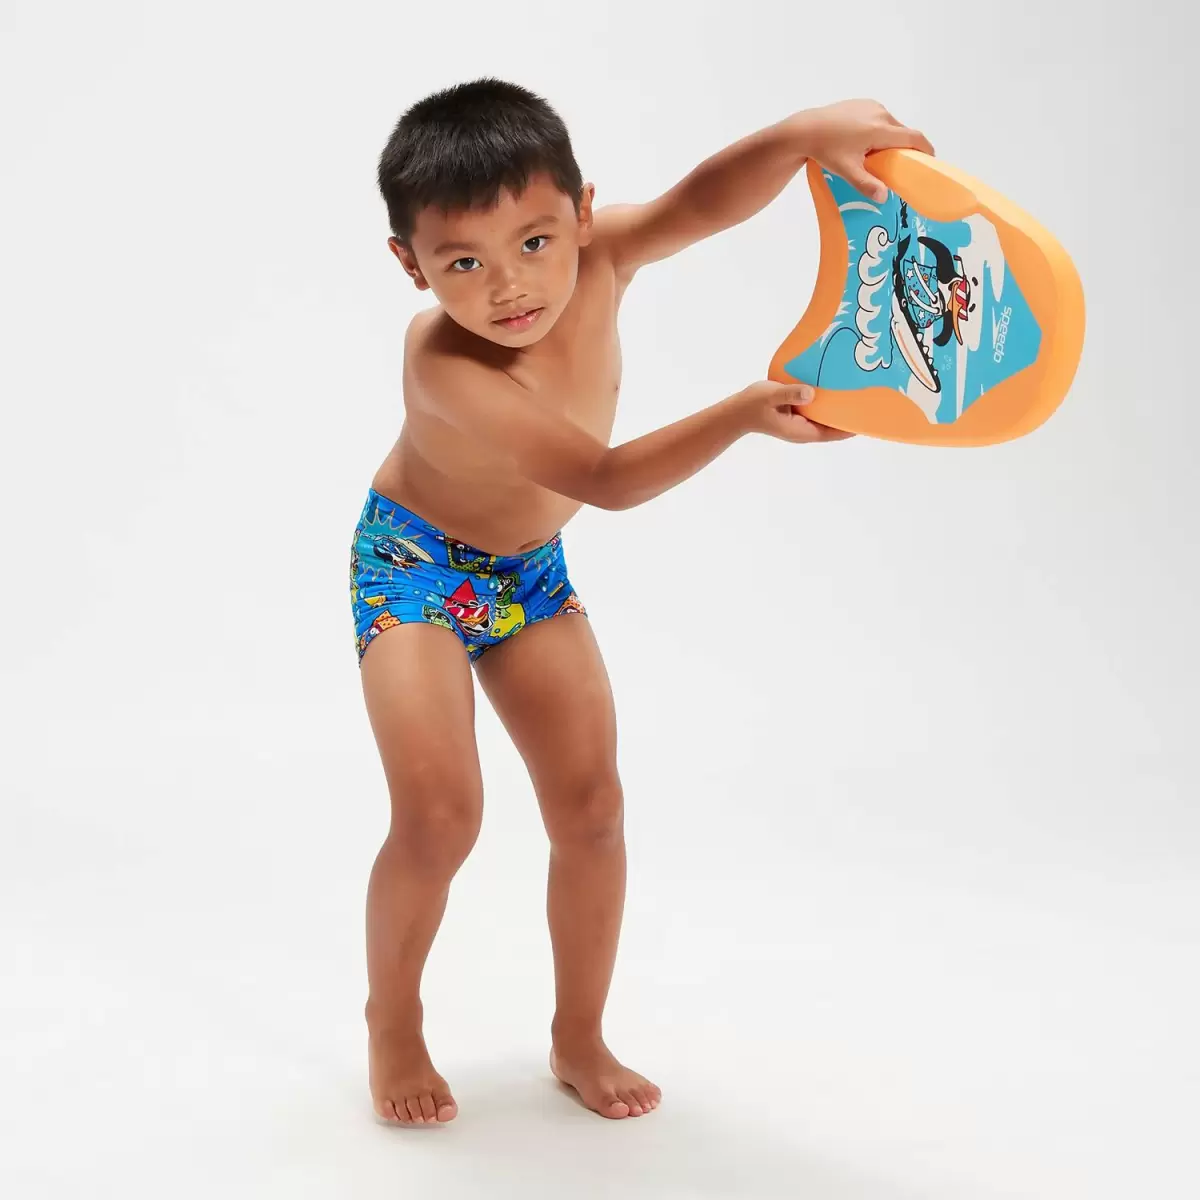 Speedo Kinder Schwimmlern- Aquashorts Für Jungen Im Kleinkindalter Blau/Gelb Jungs Bademode - 4